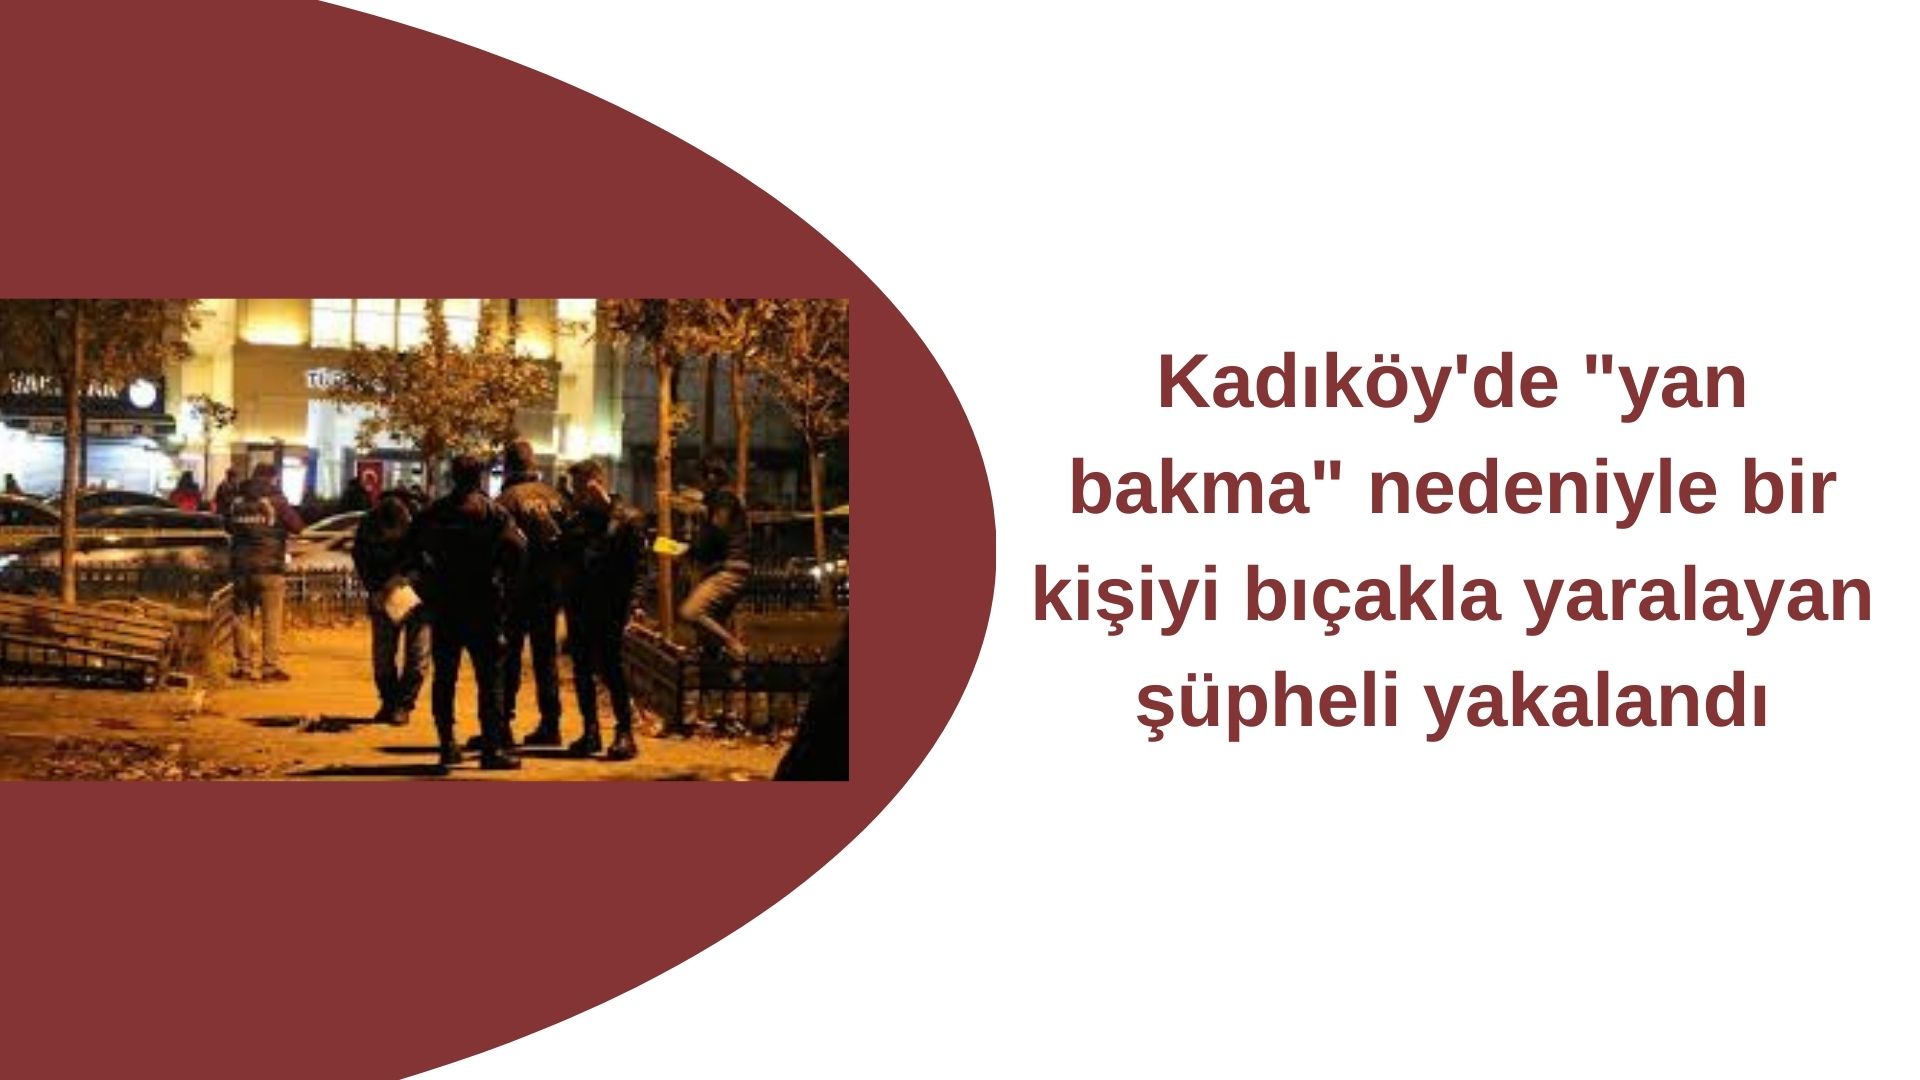 Kadıköy'de Bıçaklı saldırıya kişi Göz altına alındı